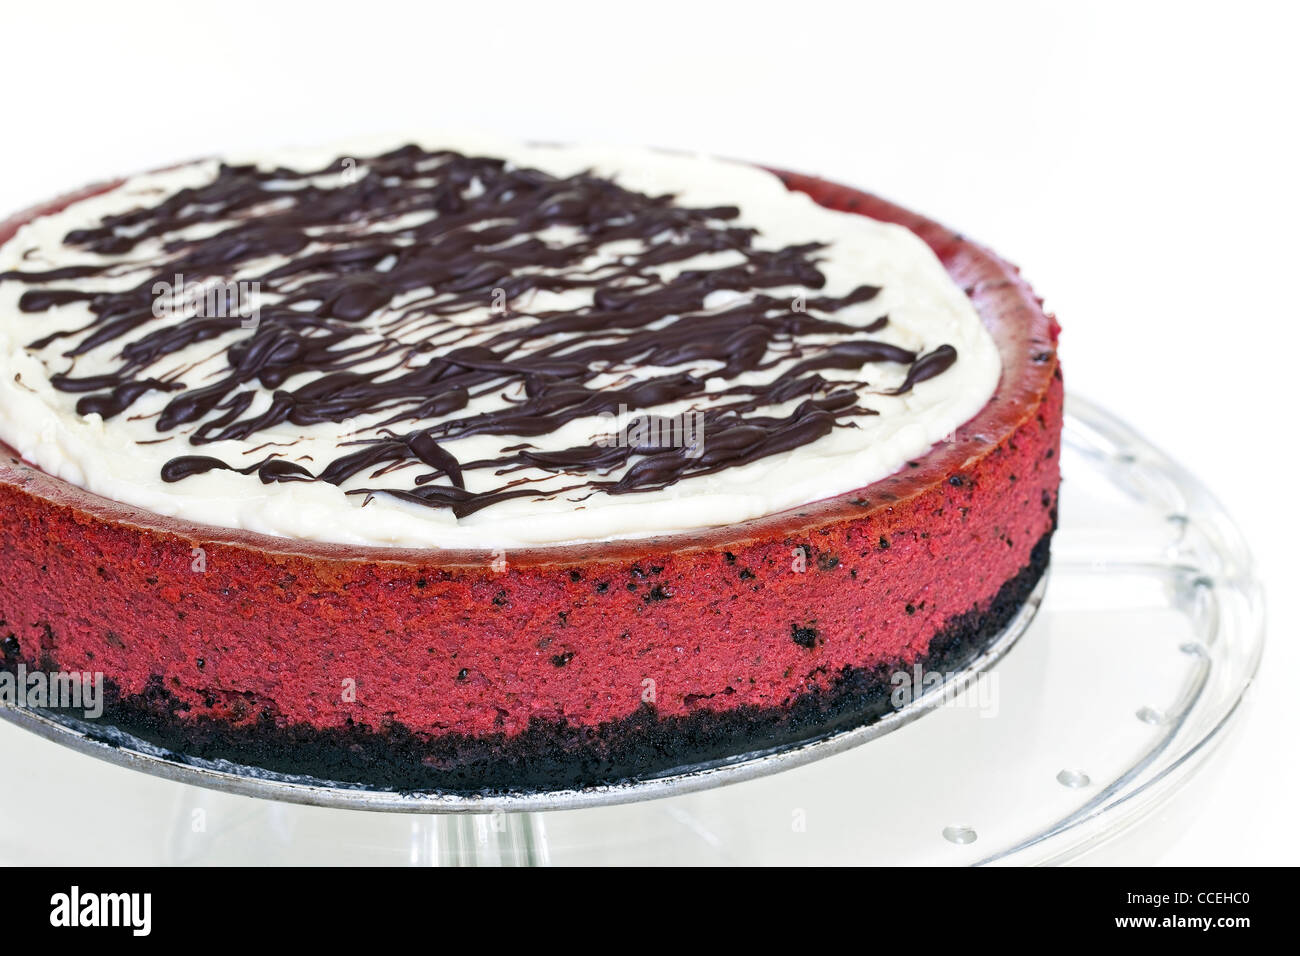 Red Velvet Cheesecake, dessert. Stock Photo